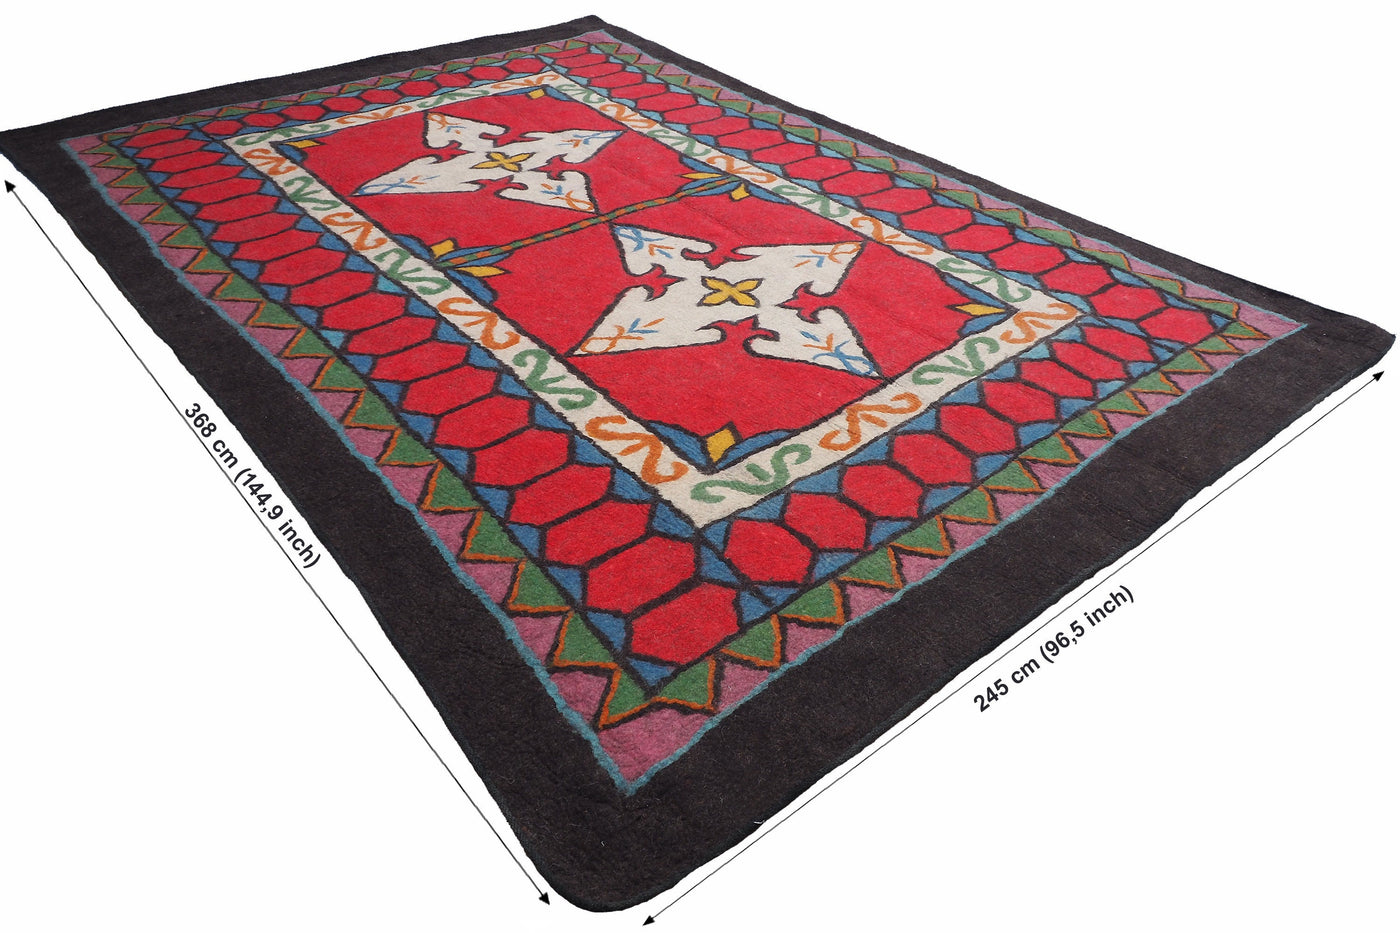 368x245 cm orient handgewebte Teppich Nomaden handgearbeitete Turkmenische nomanden Jurten Filzteppich Filz koshma Afghanistan shyrdak N704  Orientsbazar   